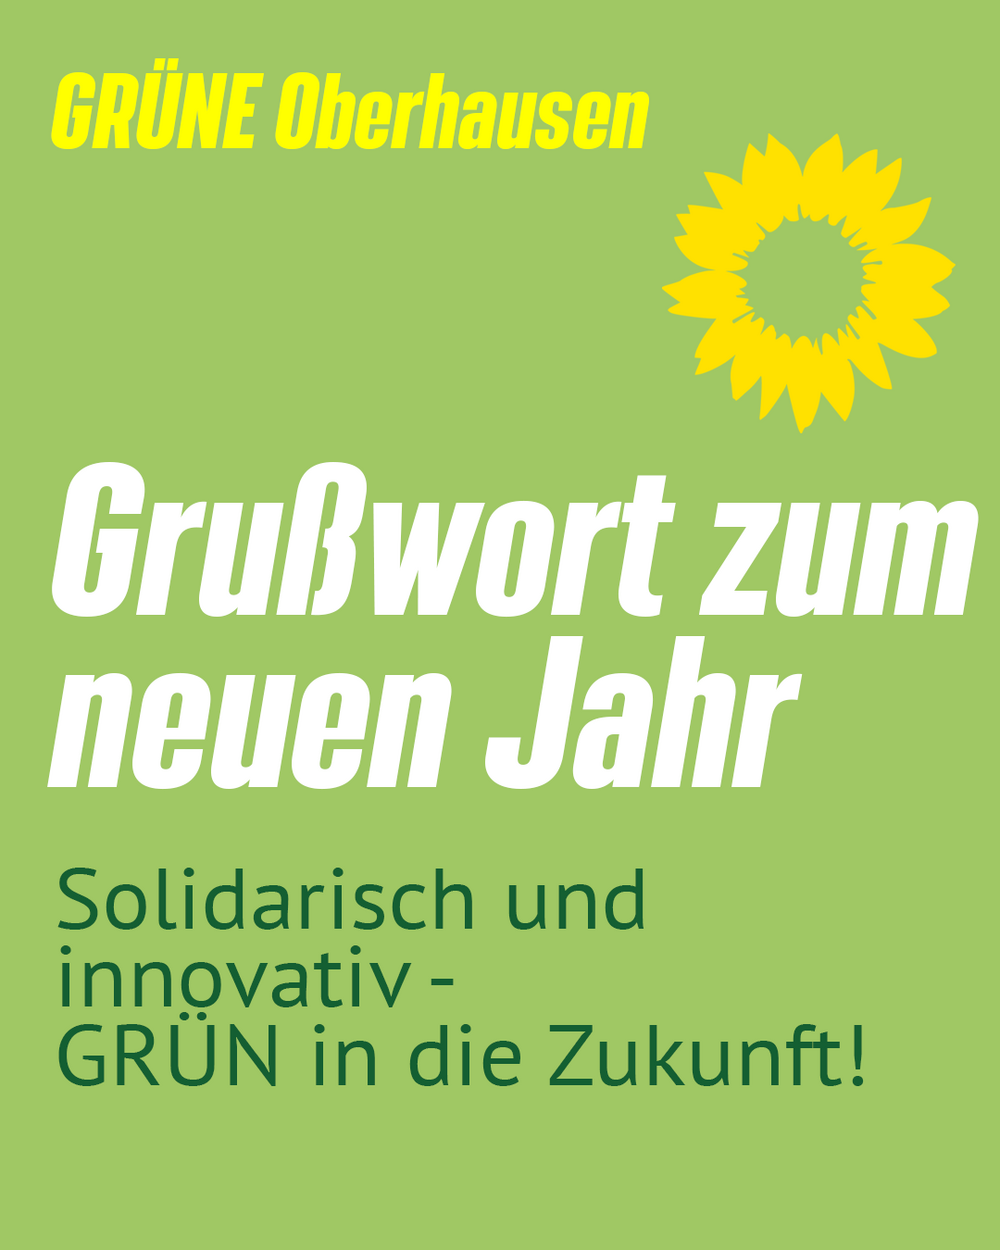 GRÜNE Oberhausen - Grußwort zum neuen Jahr - Solidarisch und innovativ - GRÜN in die Zukunft!